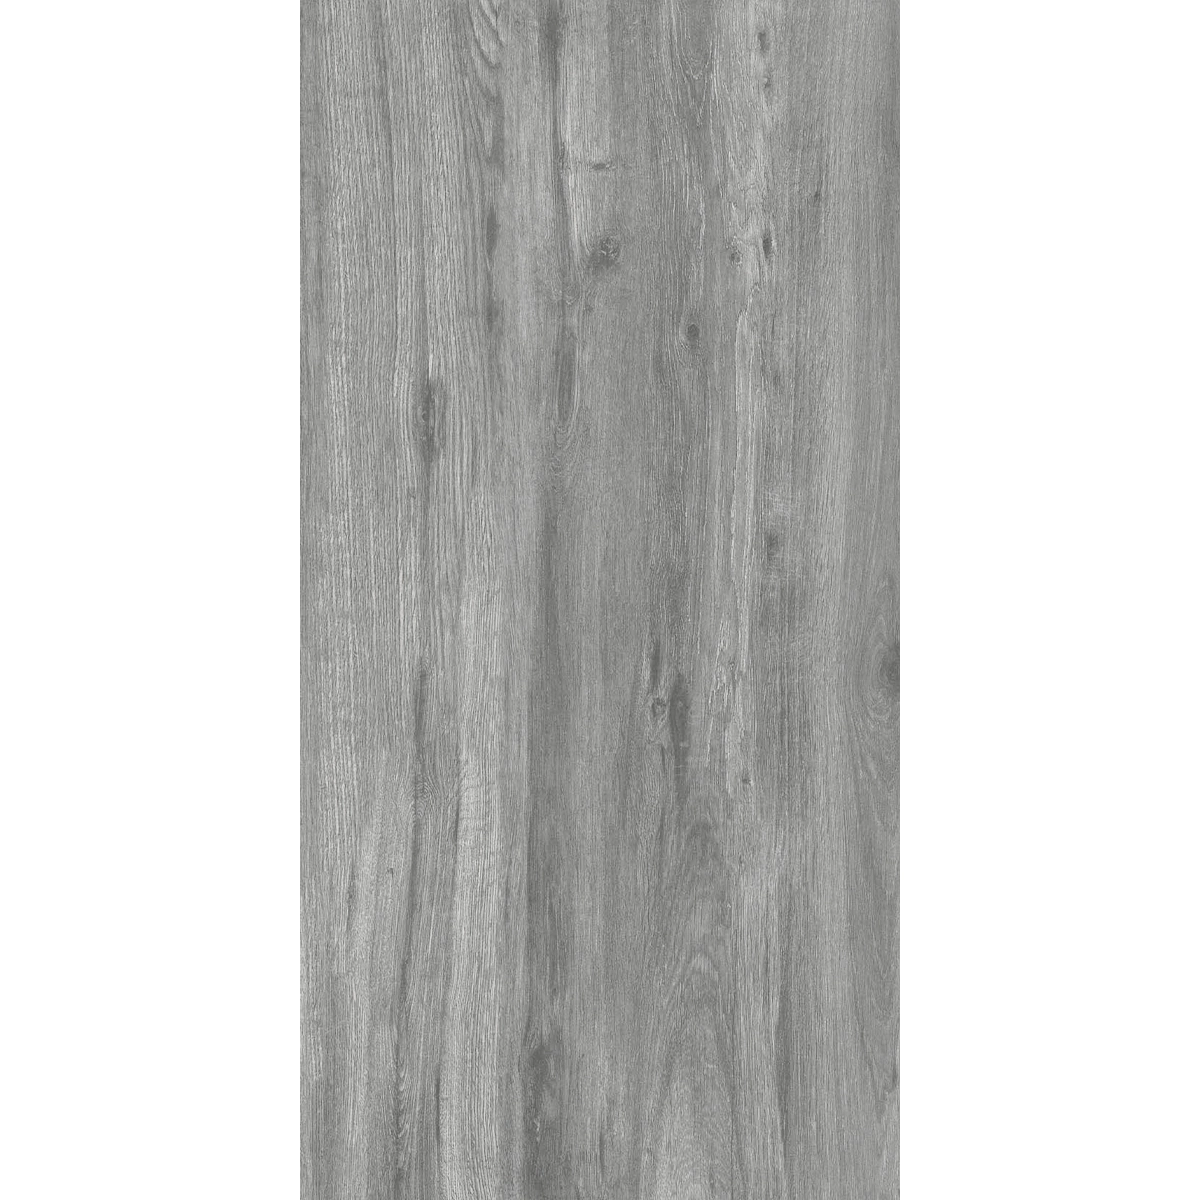 Terrassenplatten Passion Wood Black 45x90x2 cm